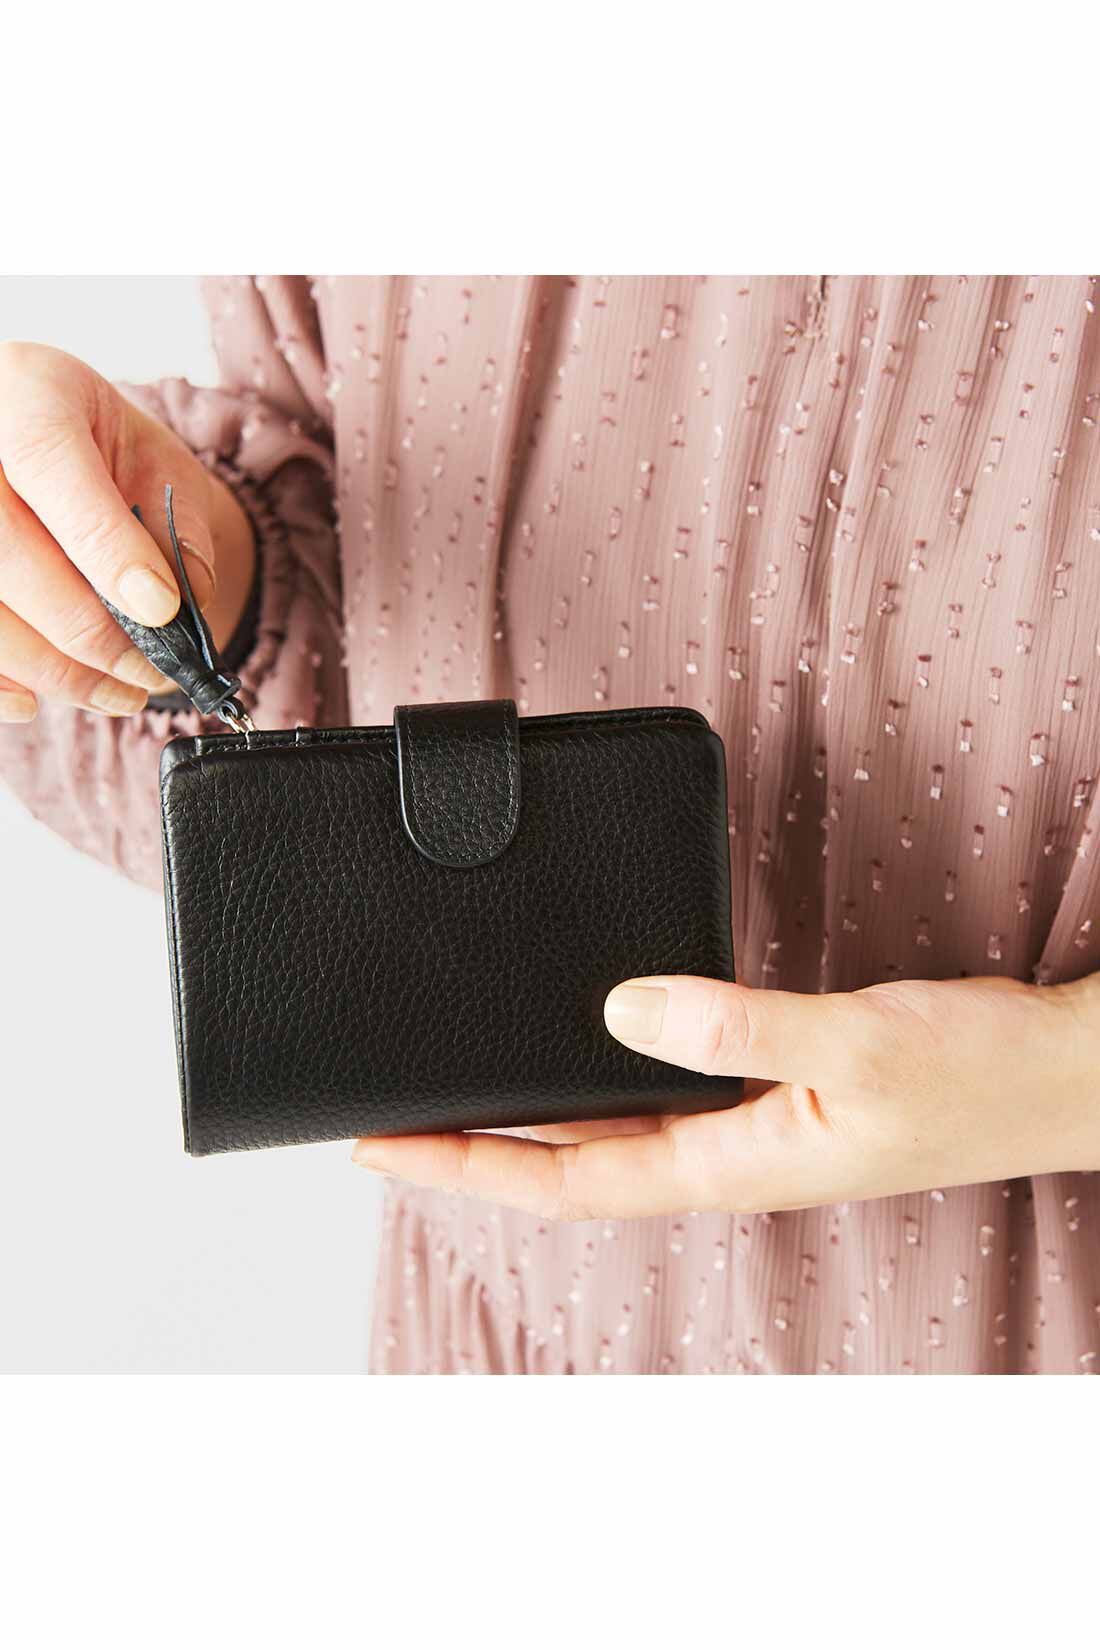 イディット|IEDIT[イディット]　くったり本革素材できれいめ二つ折り財布〈ブラック〉|手のひらに収まるコンパクトなサイズ感。